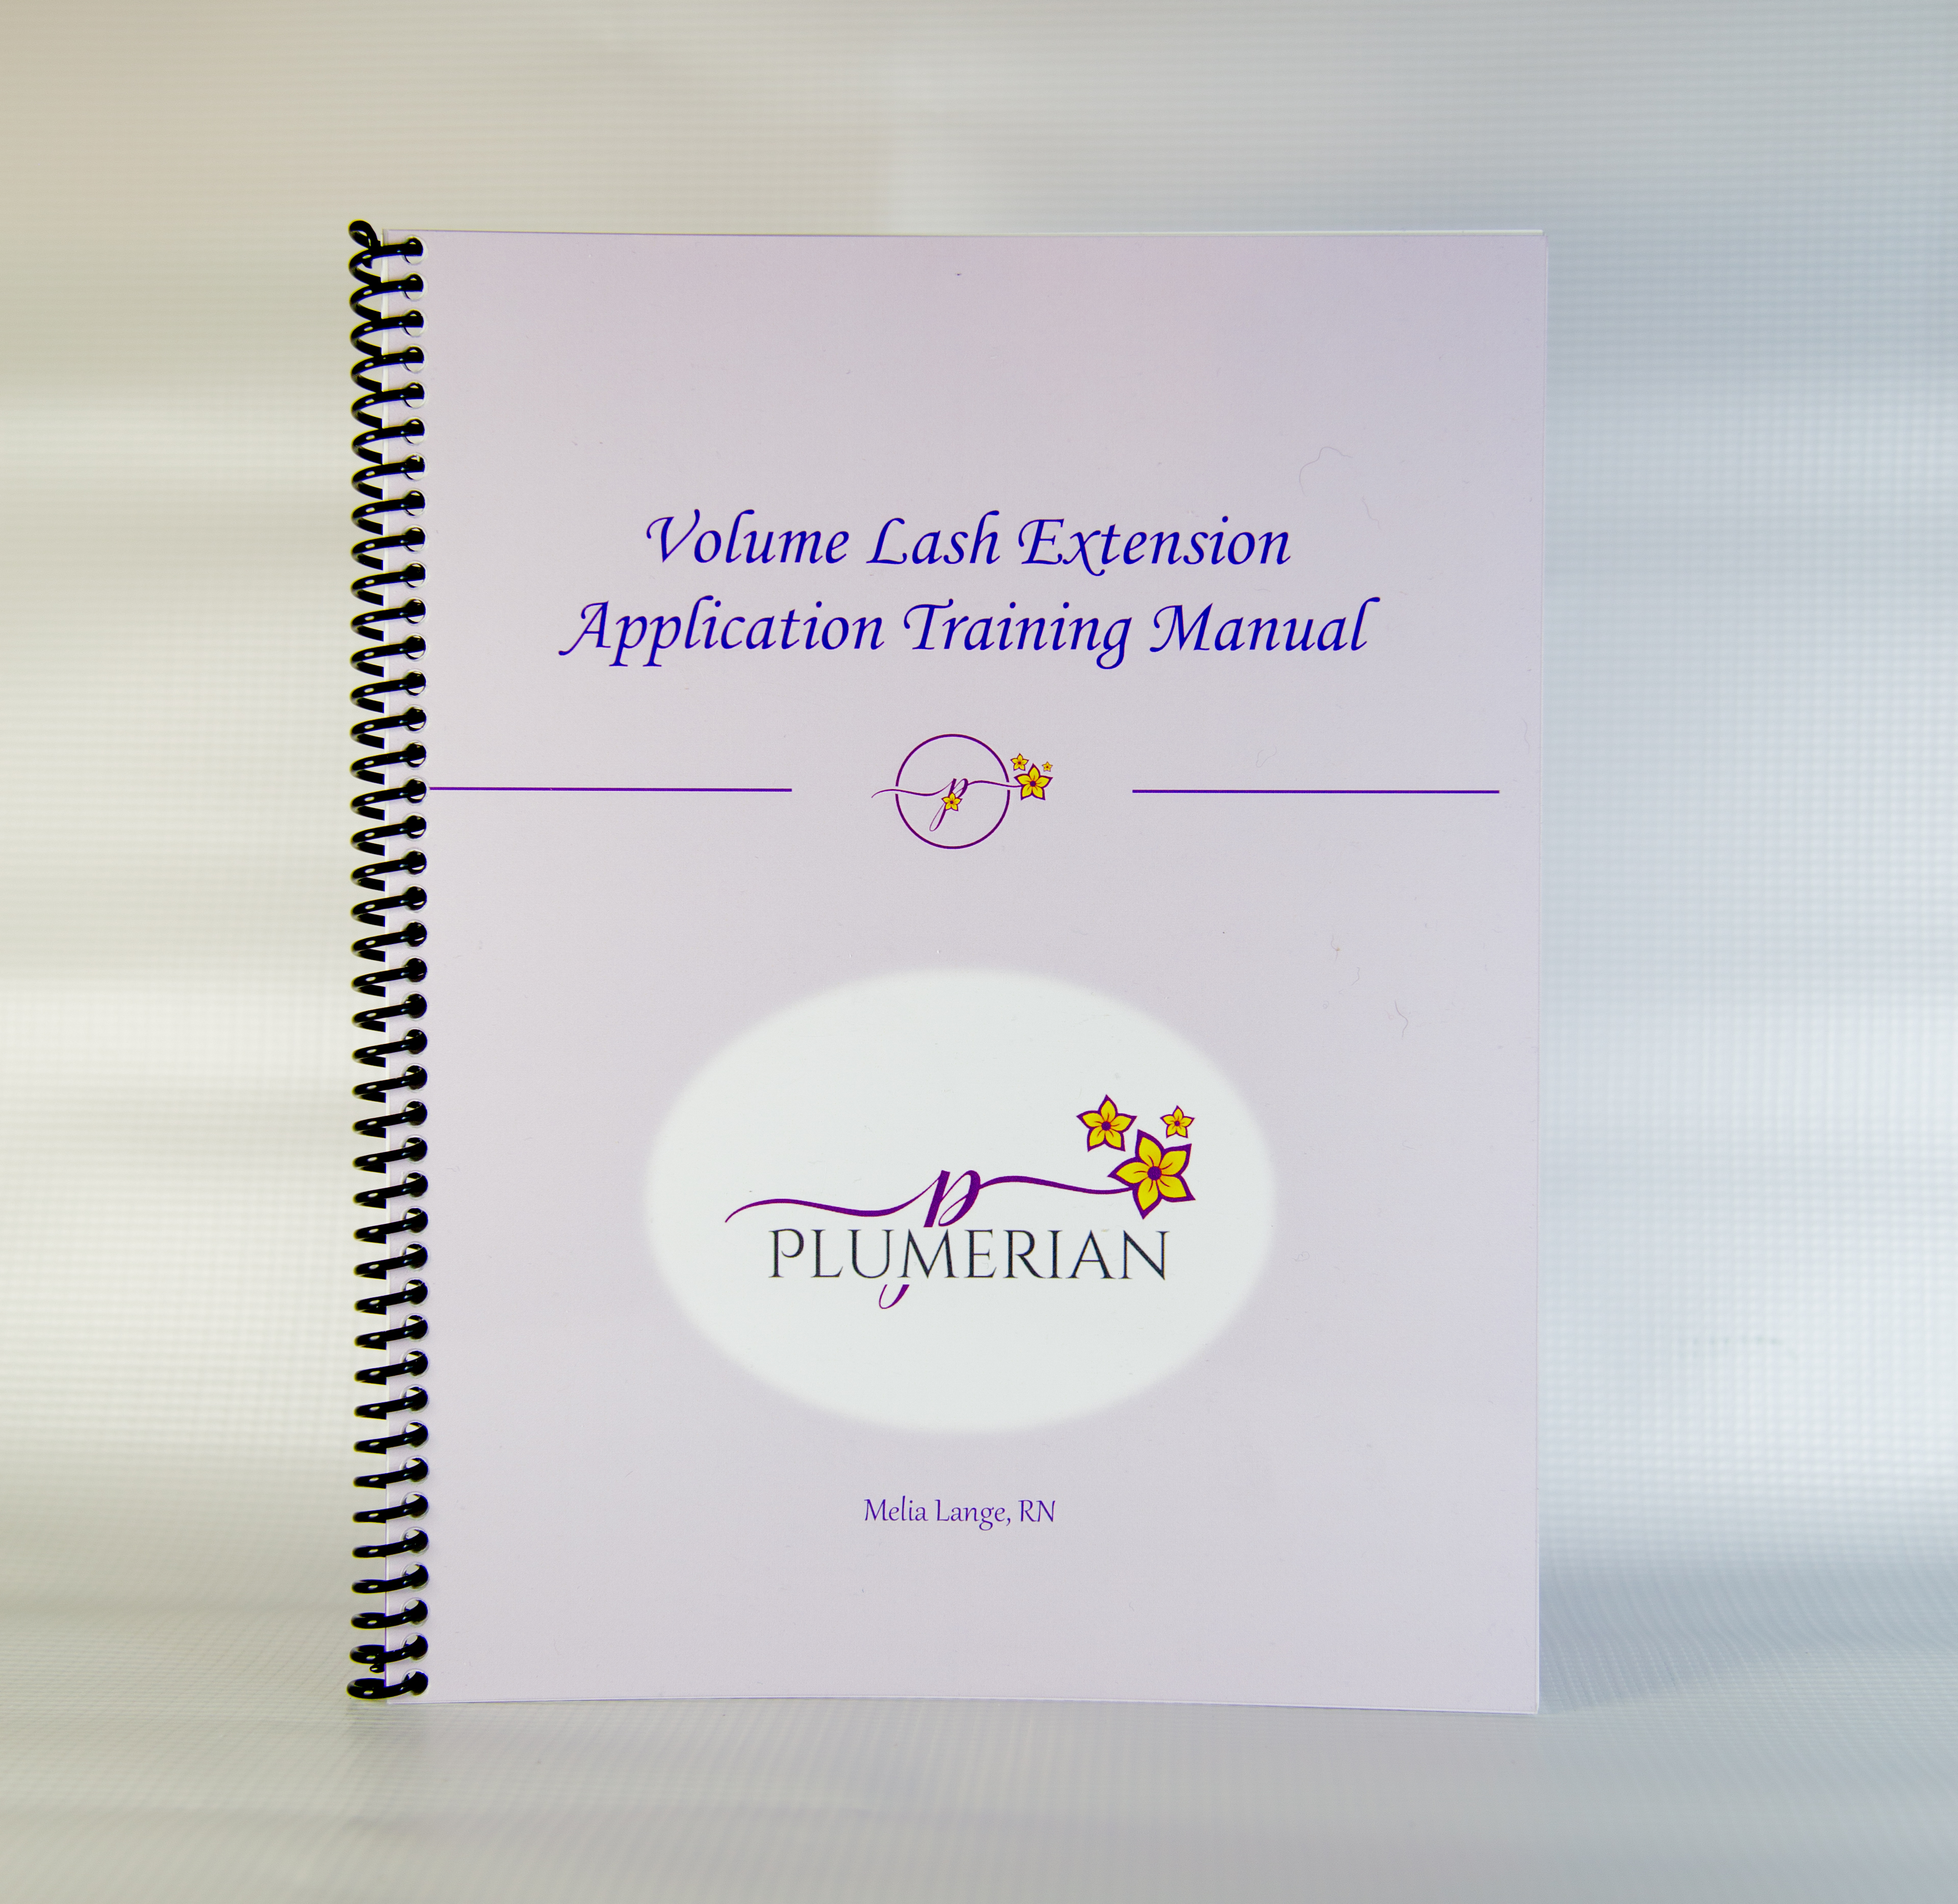 ihs kingdom training manual